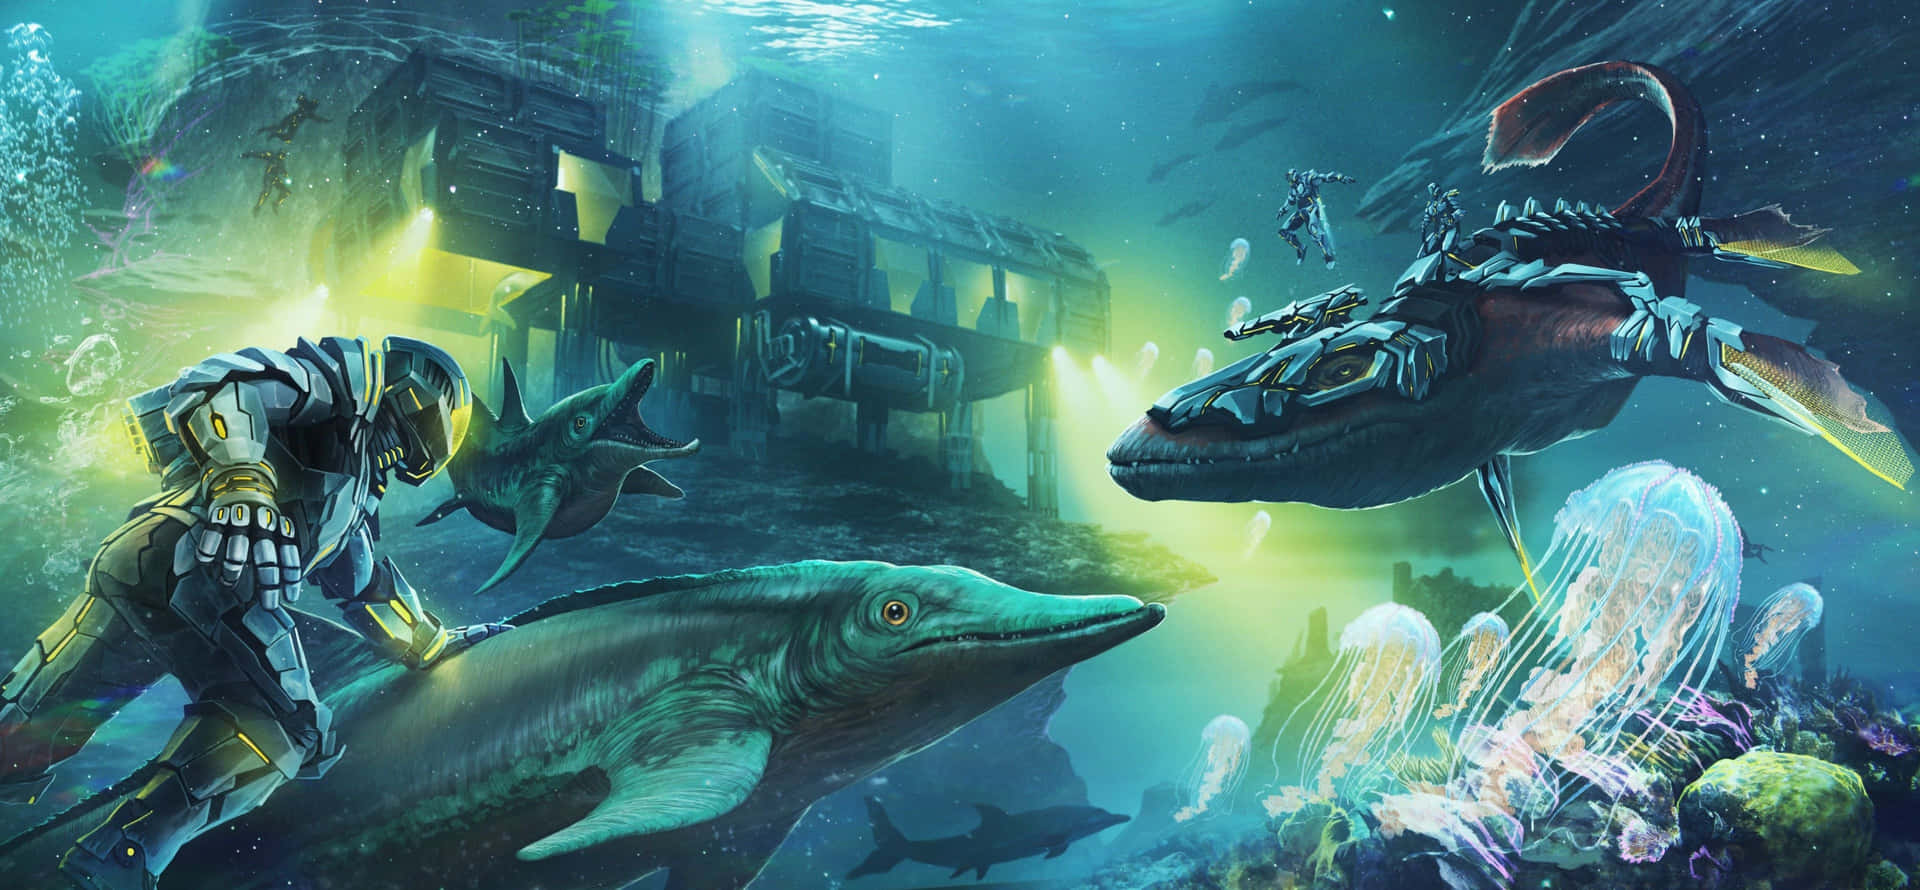 Utforskavärlden Av Ark I Detta Fantastiska Spel. Wallpaper